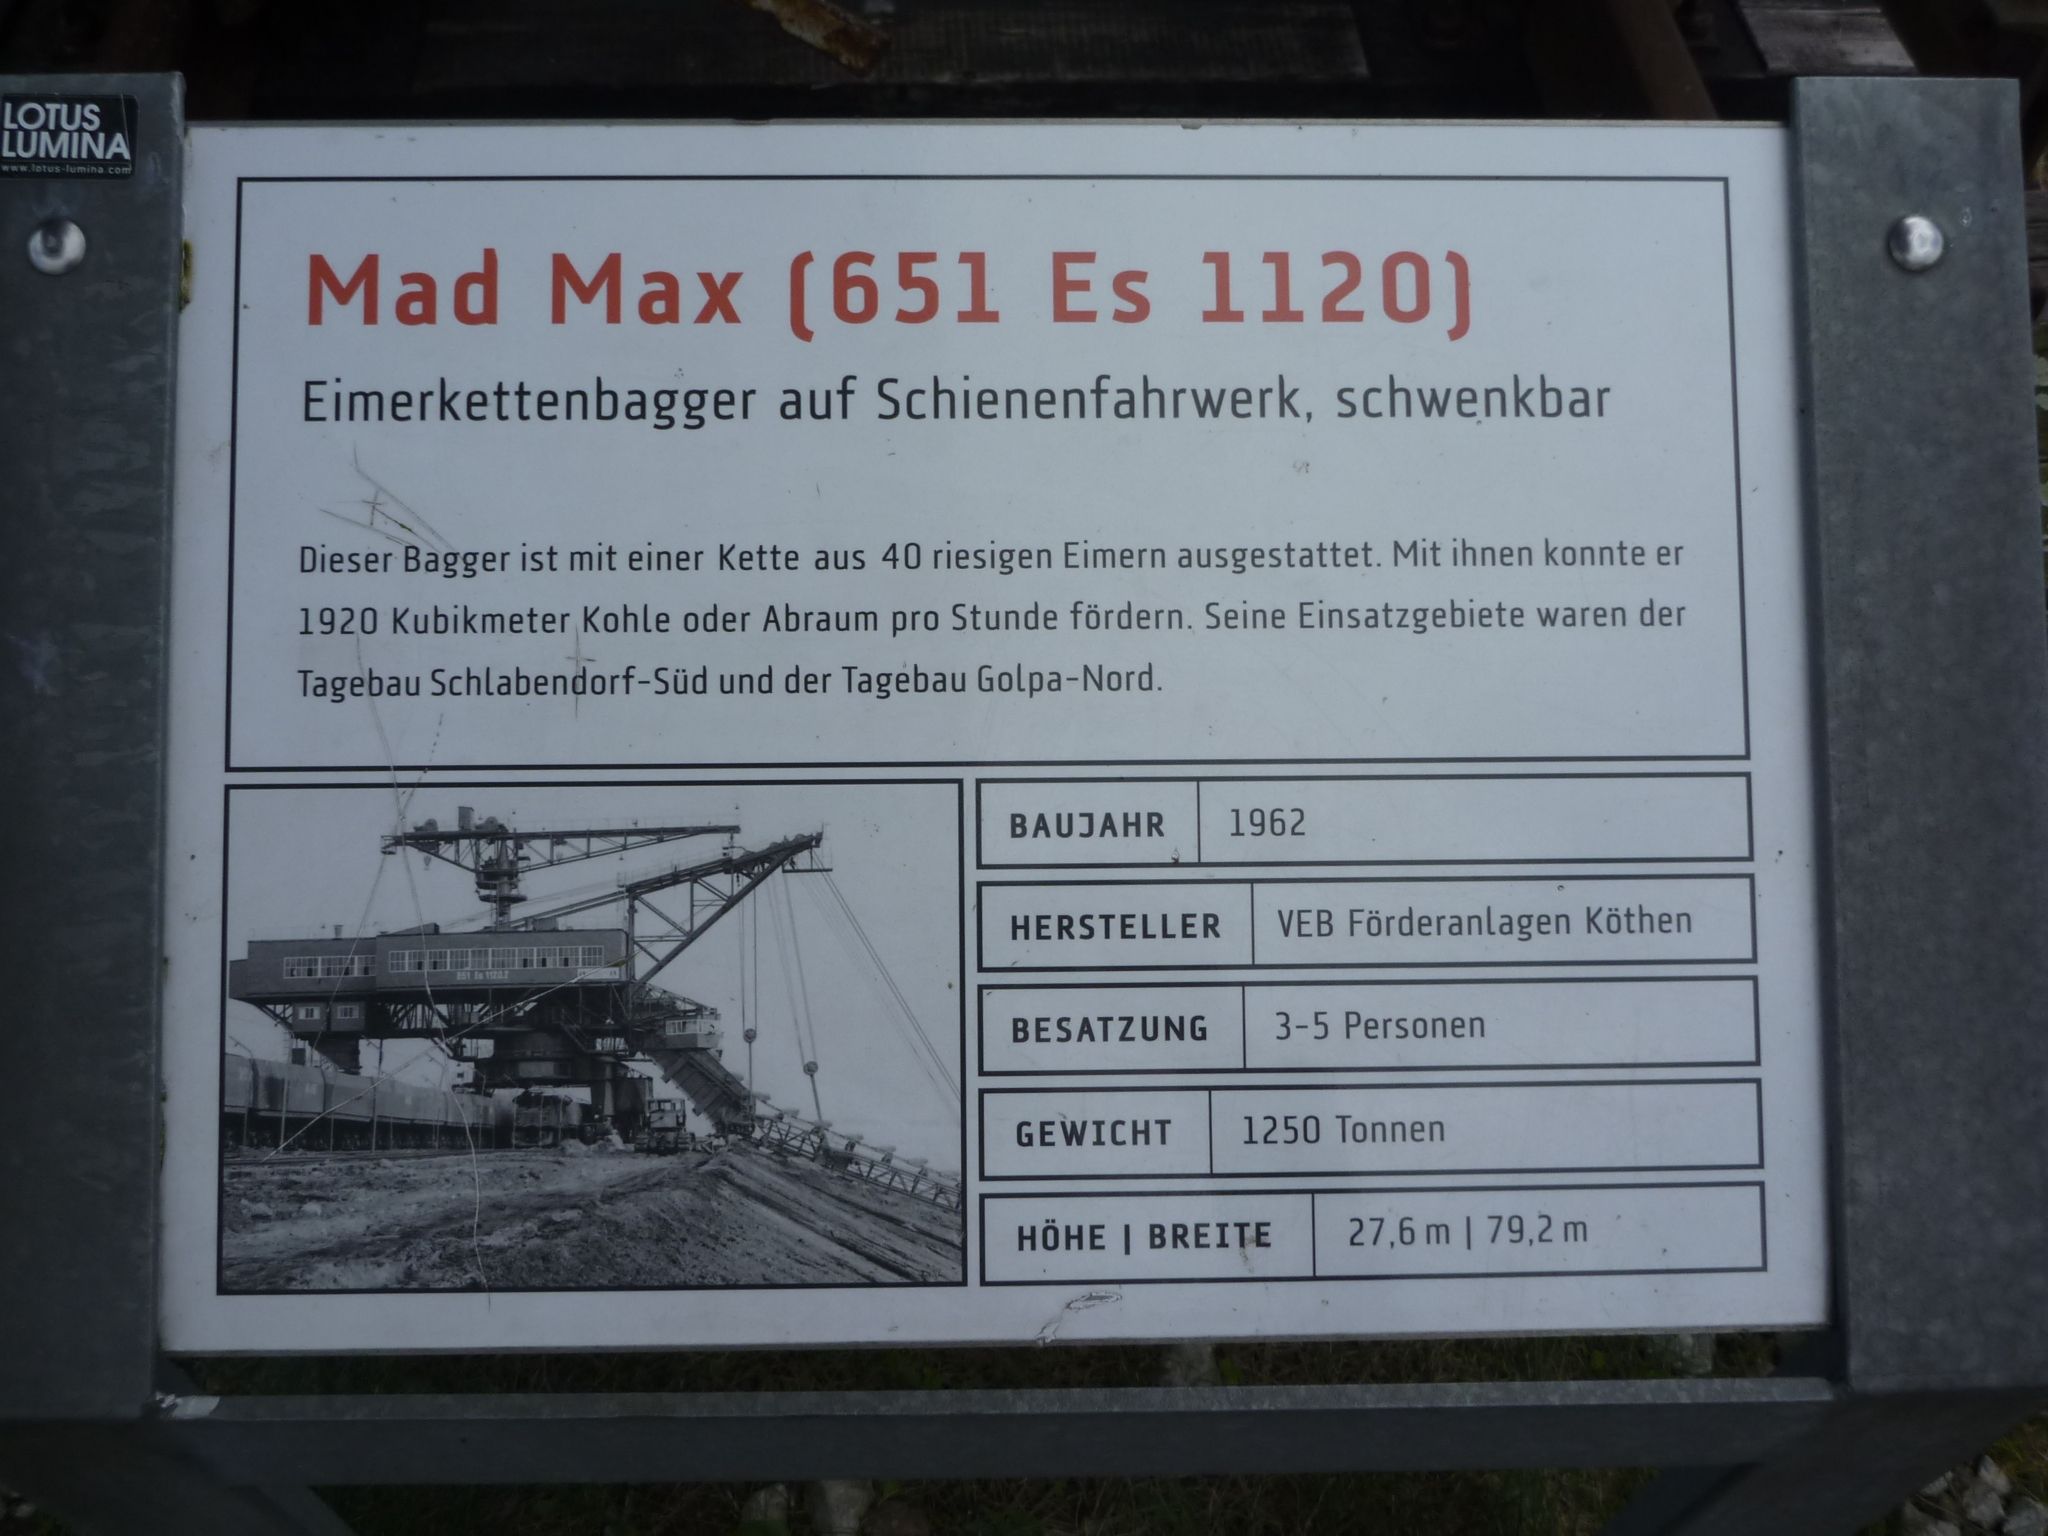 Mad Max ;-)